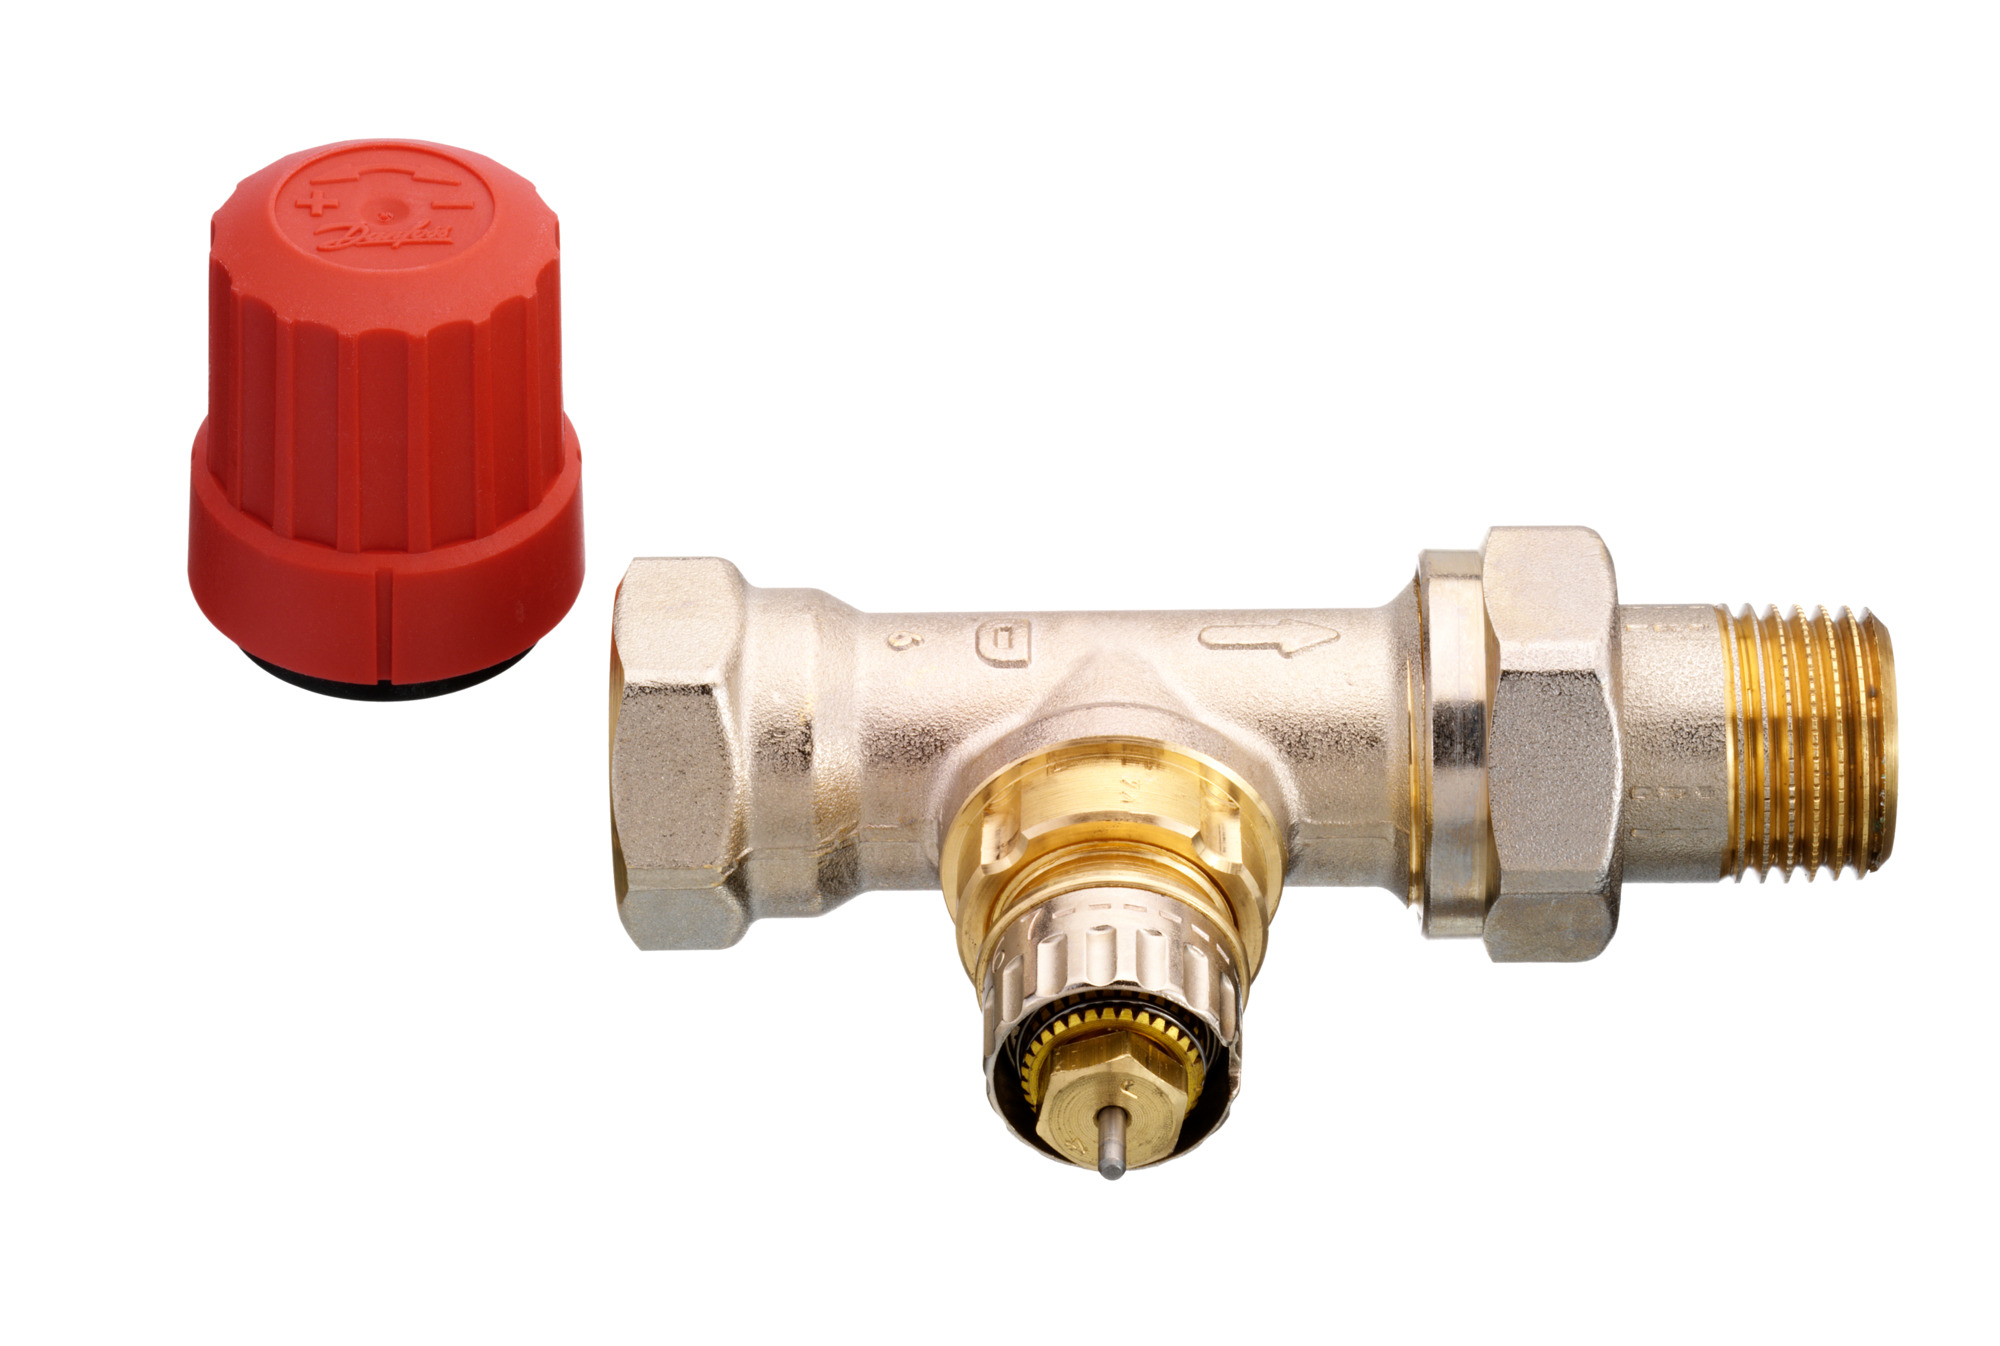 Danfoss 013g0033 RA-N 15 1/2" Angle flux normal valve pour deux systèmes de tuyaux 